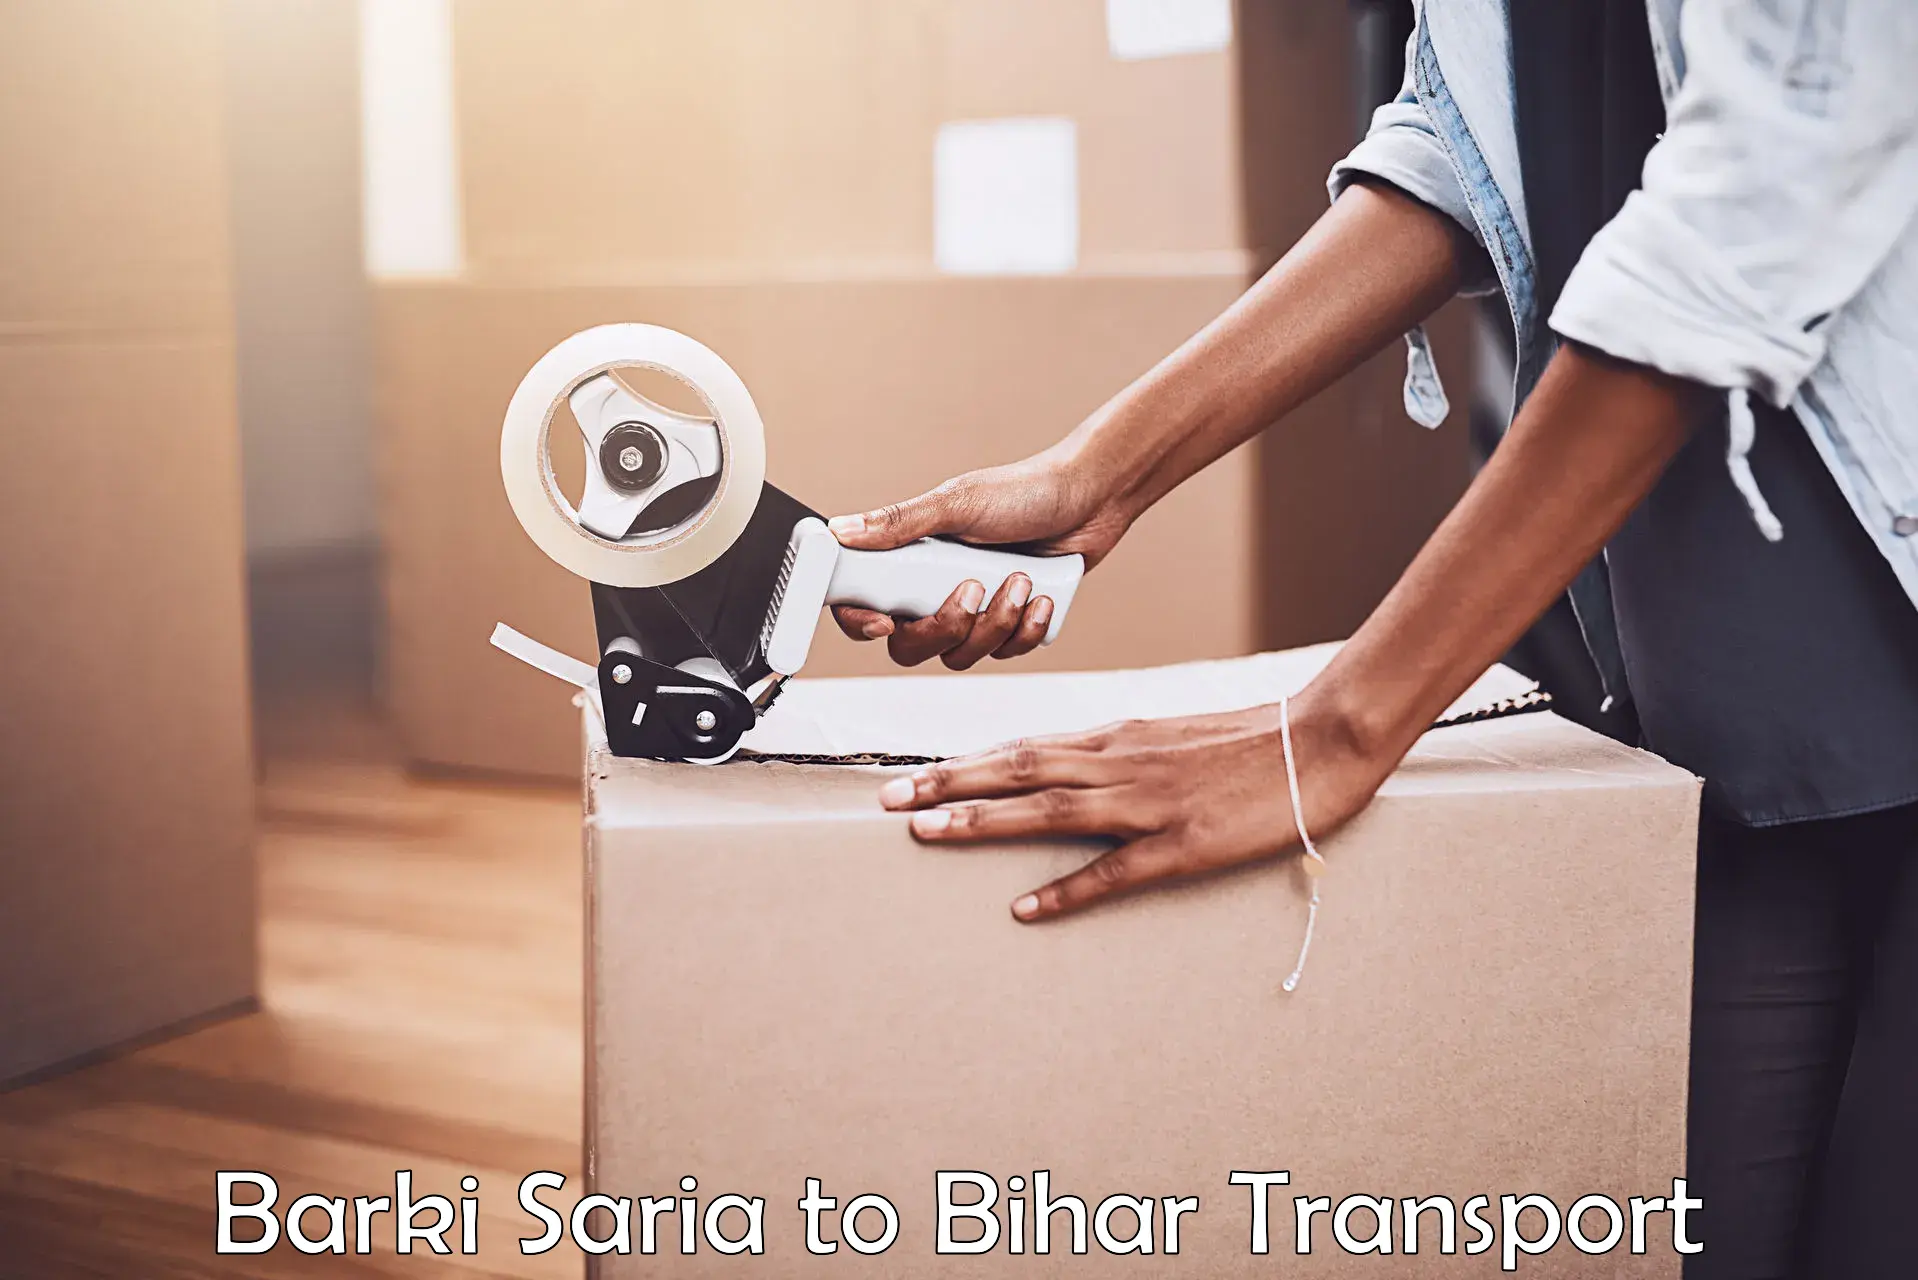 Delivery service Barki Saria to Dehri